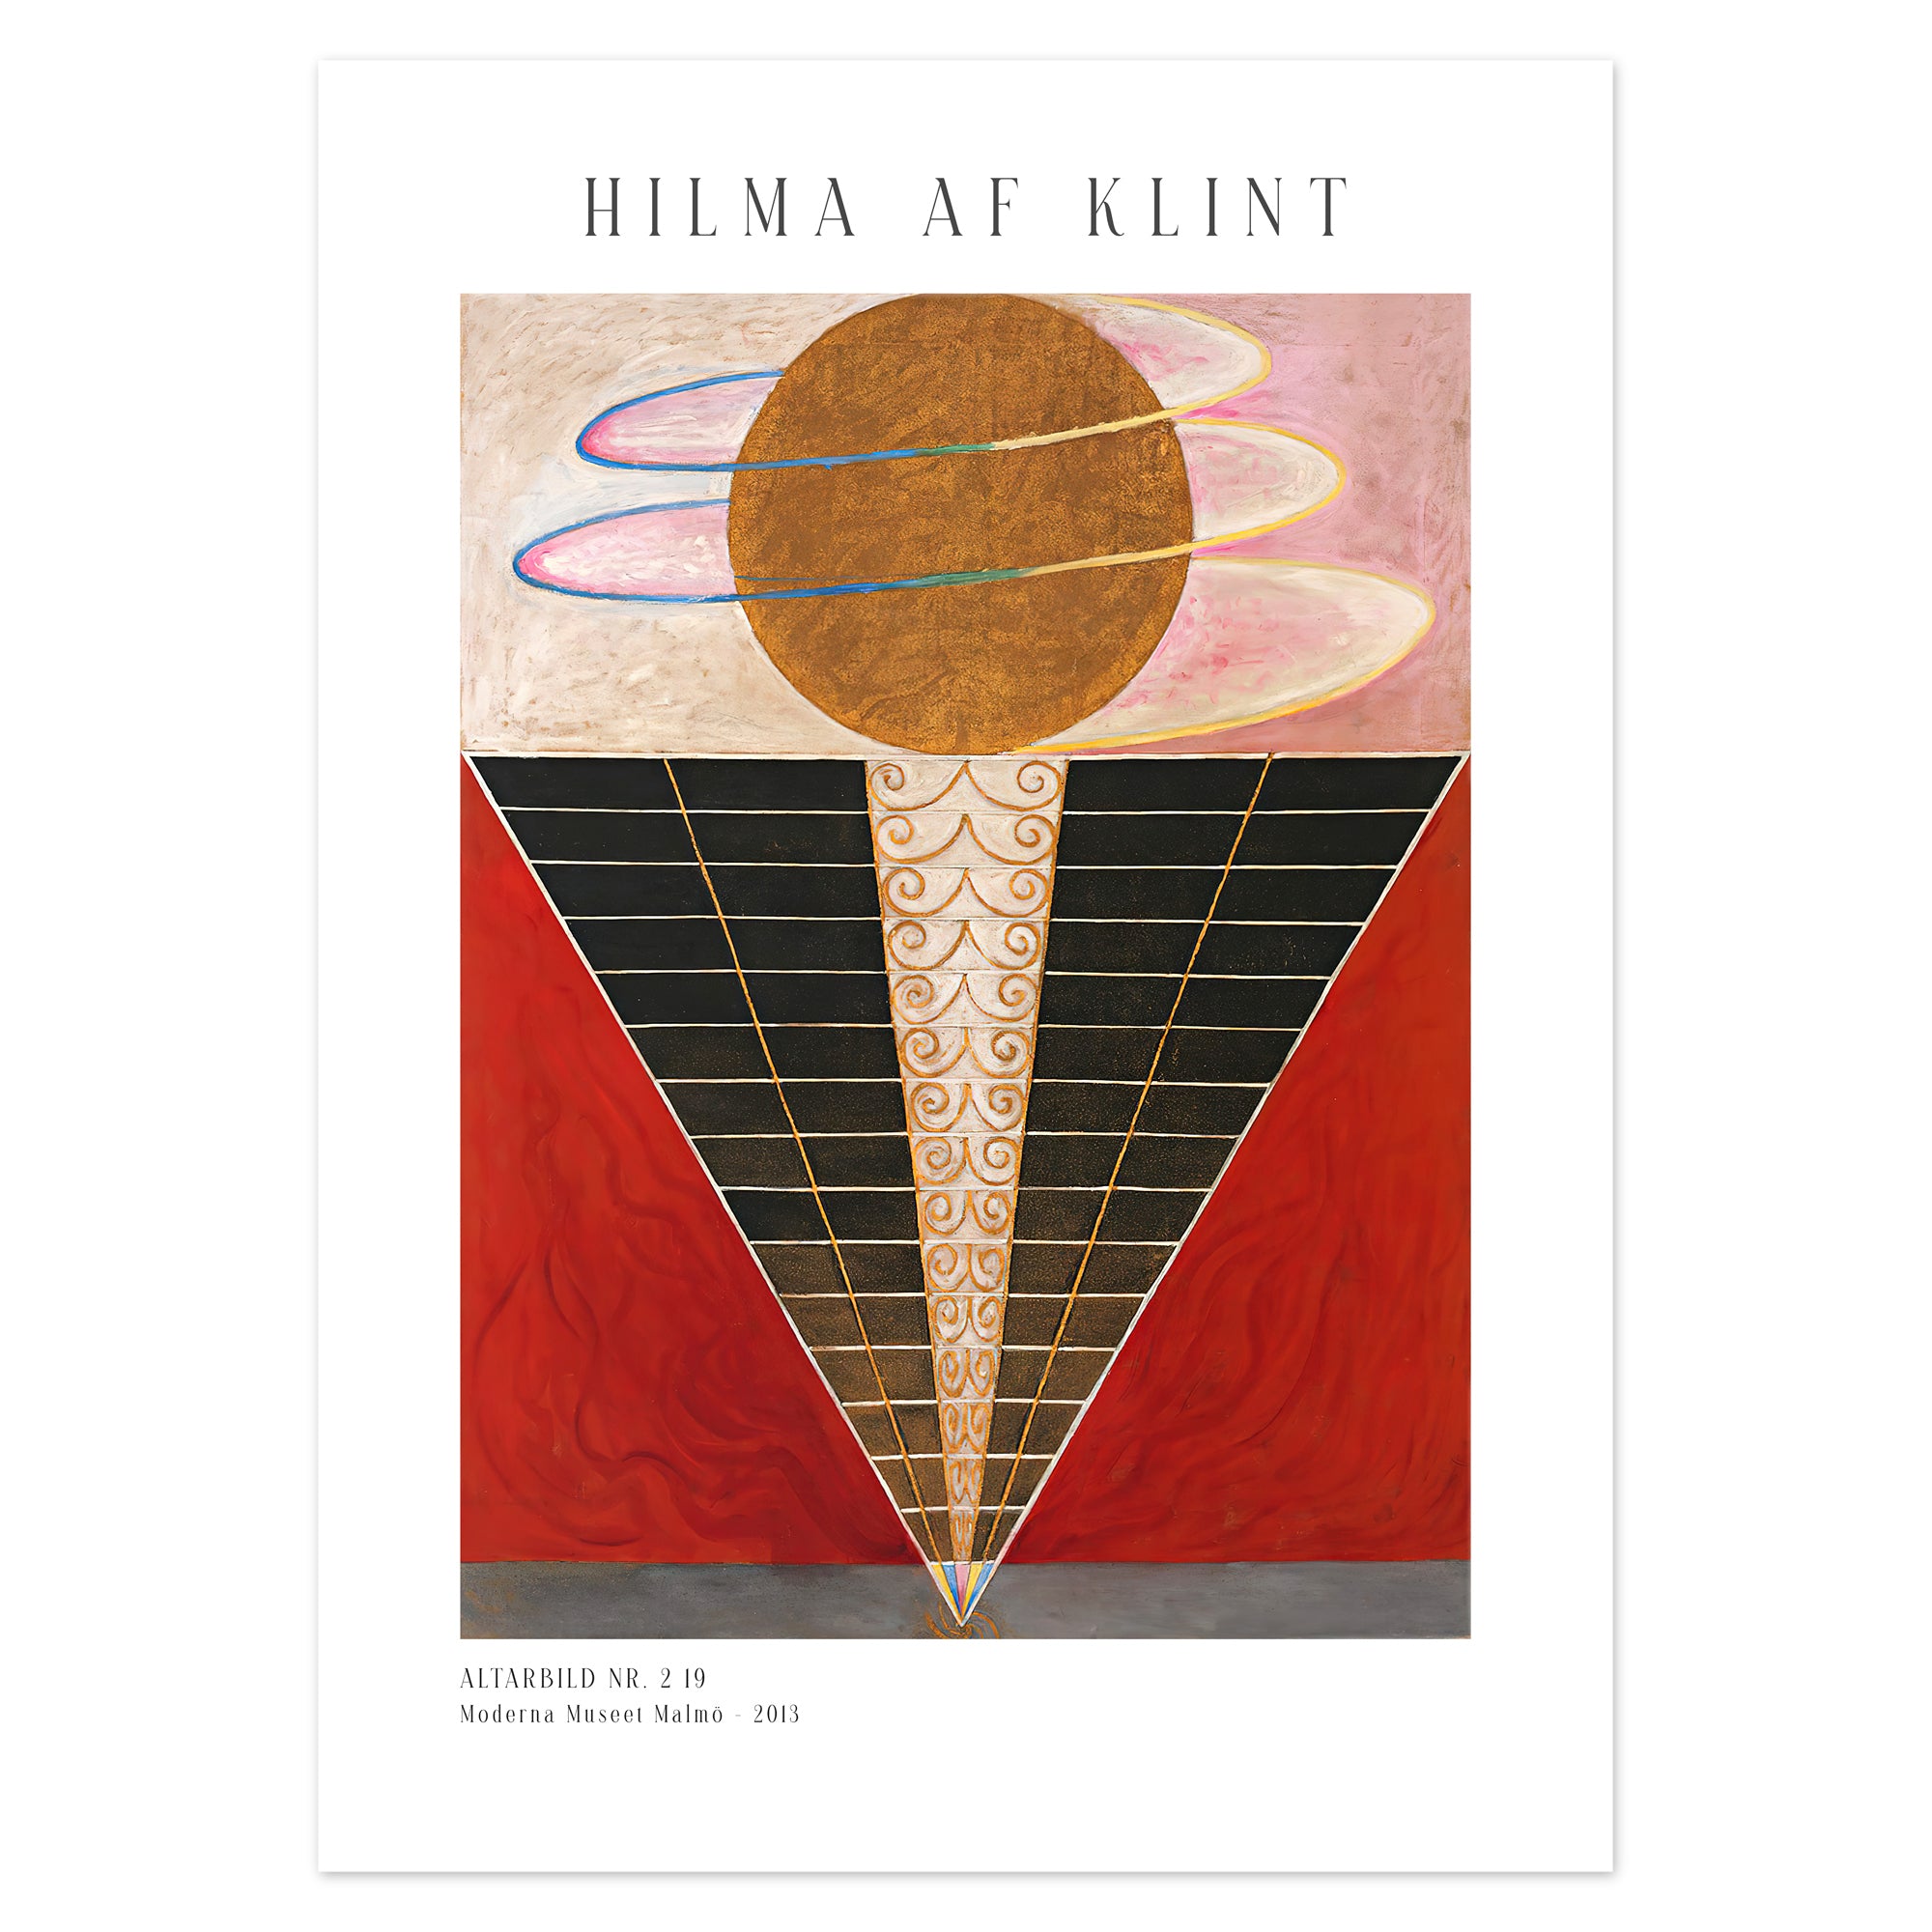 Hilma af Klint Poster - Altarbild nr. 2